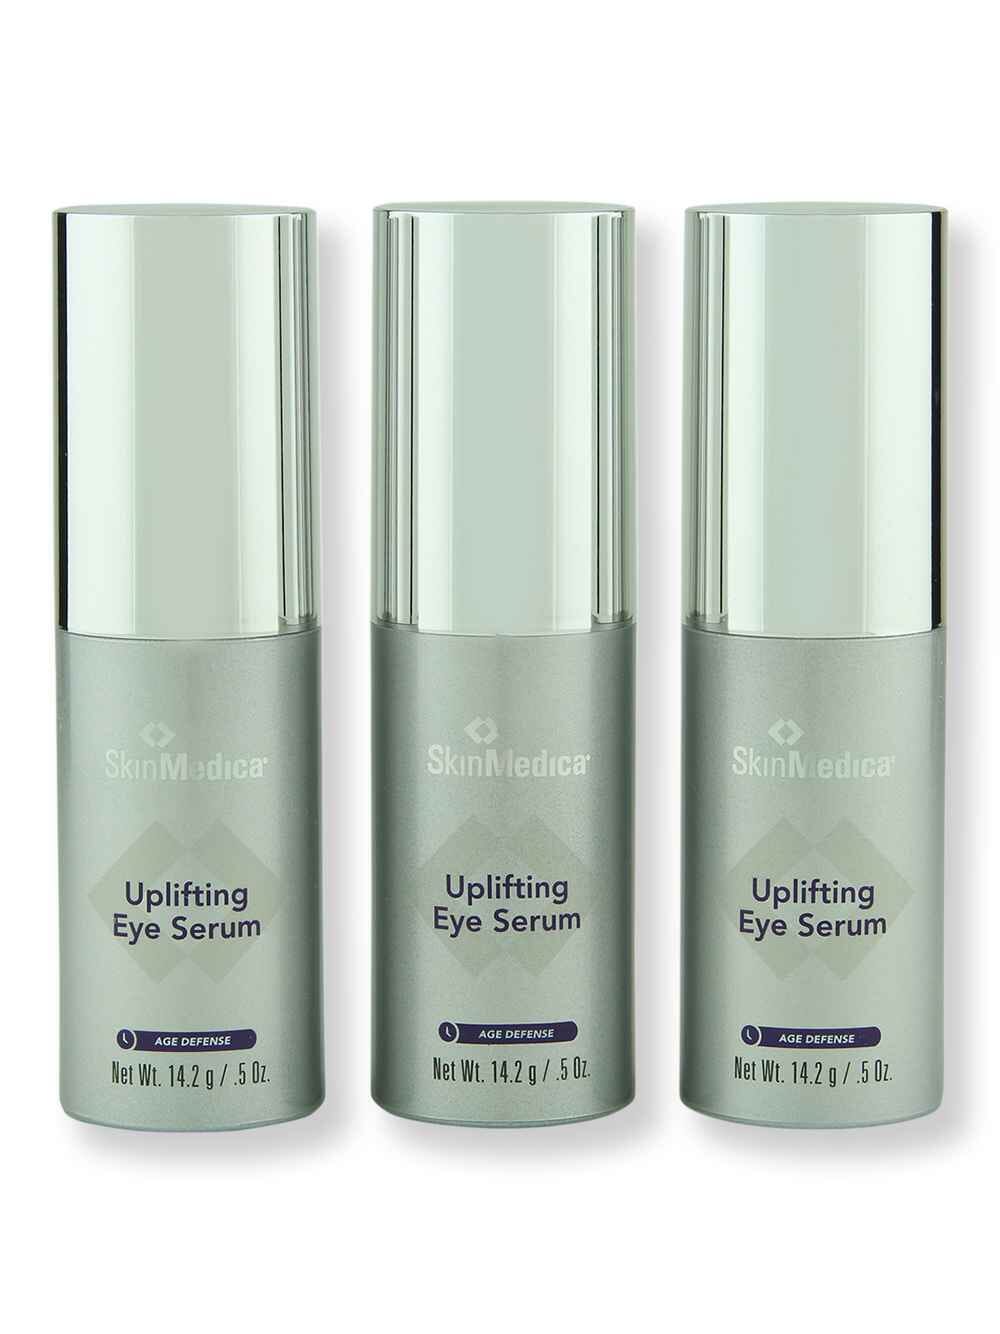 SkinMedica SkinMedica Uplifting Eye Serum 0.5 oz 3 Ct Eye Serums 